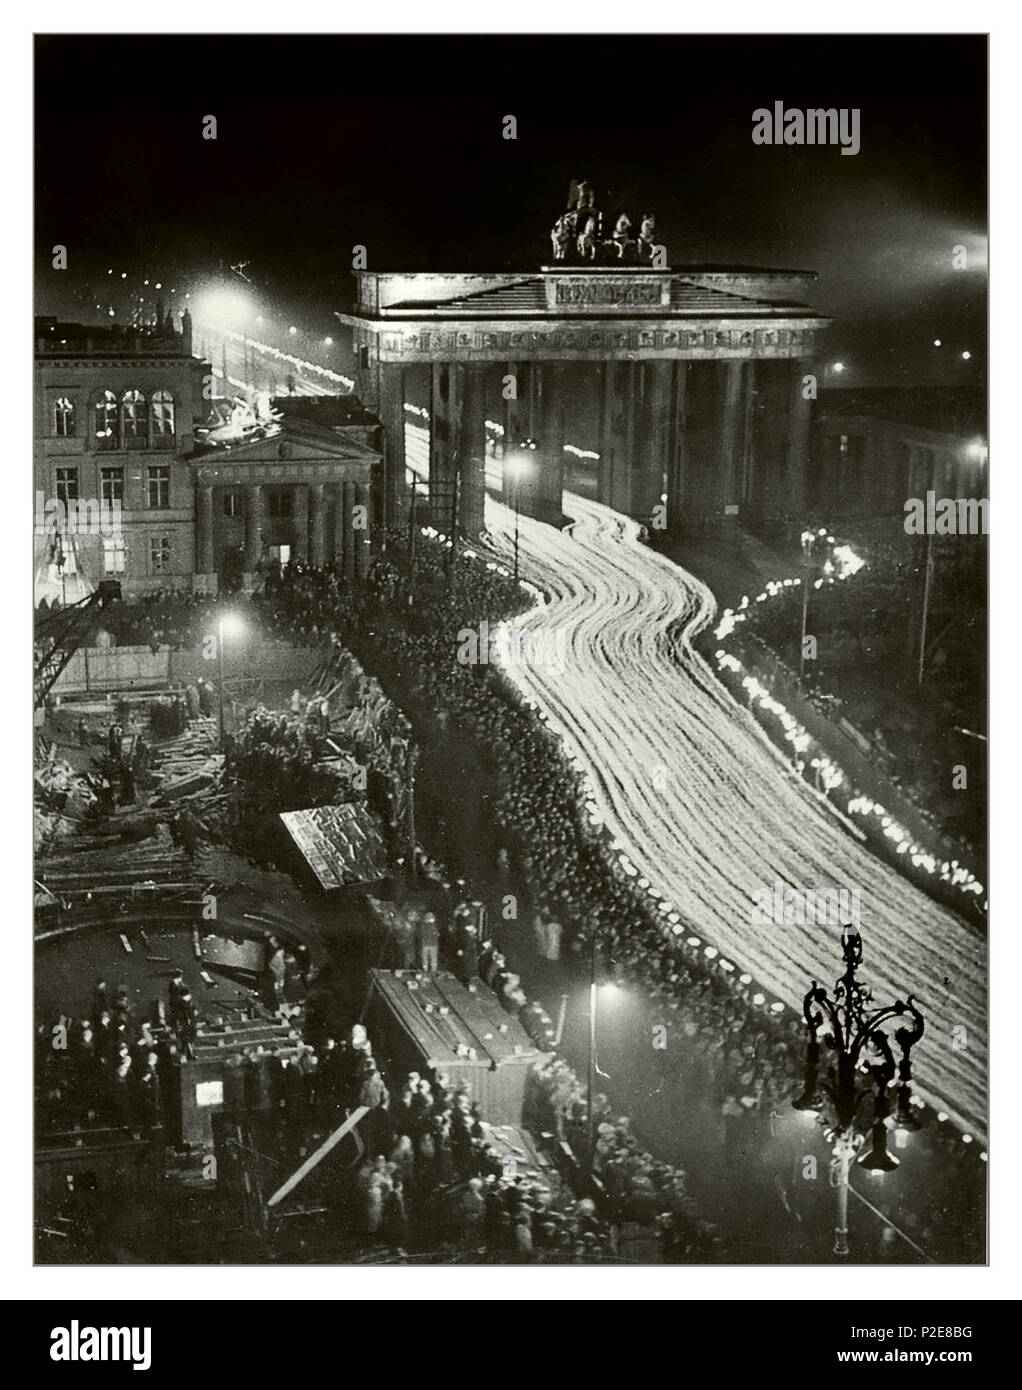 1936 Berlino nazista parata notturna fiaccolata in occasione del terzo anniversario della nomina di Adolf Hitler come cancelliere, il socialismo nazionale organizzato una processione aux flambeaux che era per commemorare il rally di tre anni prima. 'La processione trionfale attraverso la Porta di Brandeburgo come il 30 gennaio 1933" è stato il titolo per questa fotografia nella gazzetta NSDAP NAZI Volkischer Beobachter giornale, il 31 gennaio 1936. Foto Stock